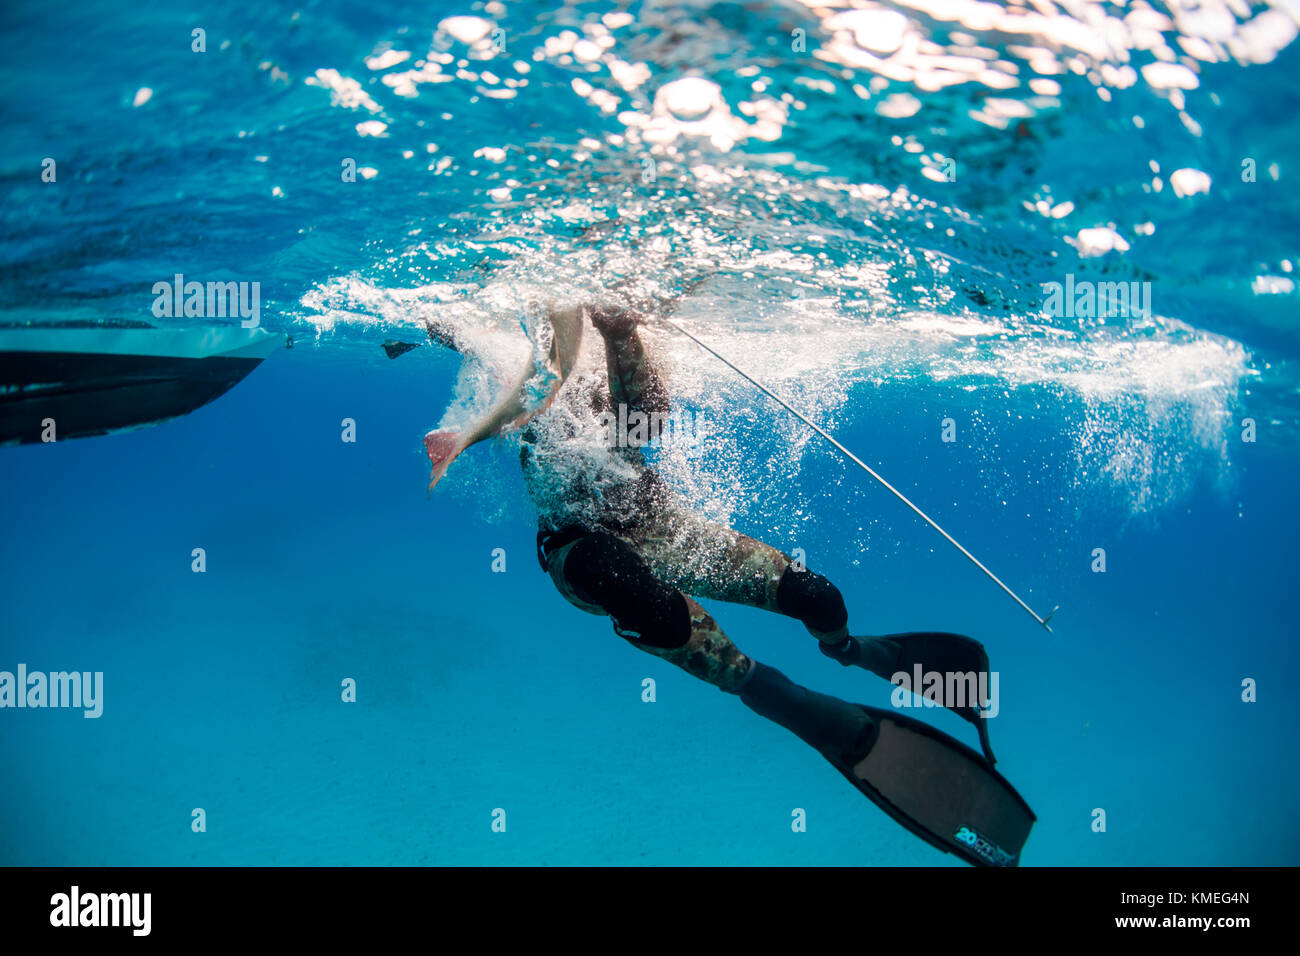 Un plongeur chargeait des poissons tués alors qu'il pêchait dans un bateau, Clarence Town, long Island, Bahamas Banque D'Images